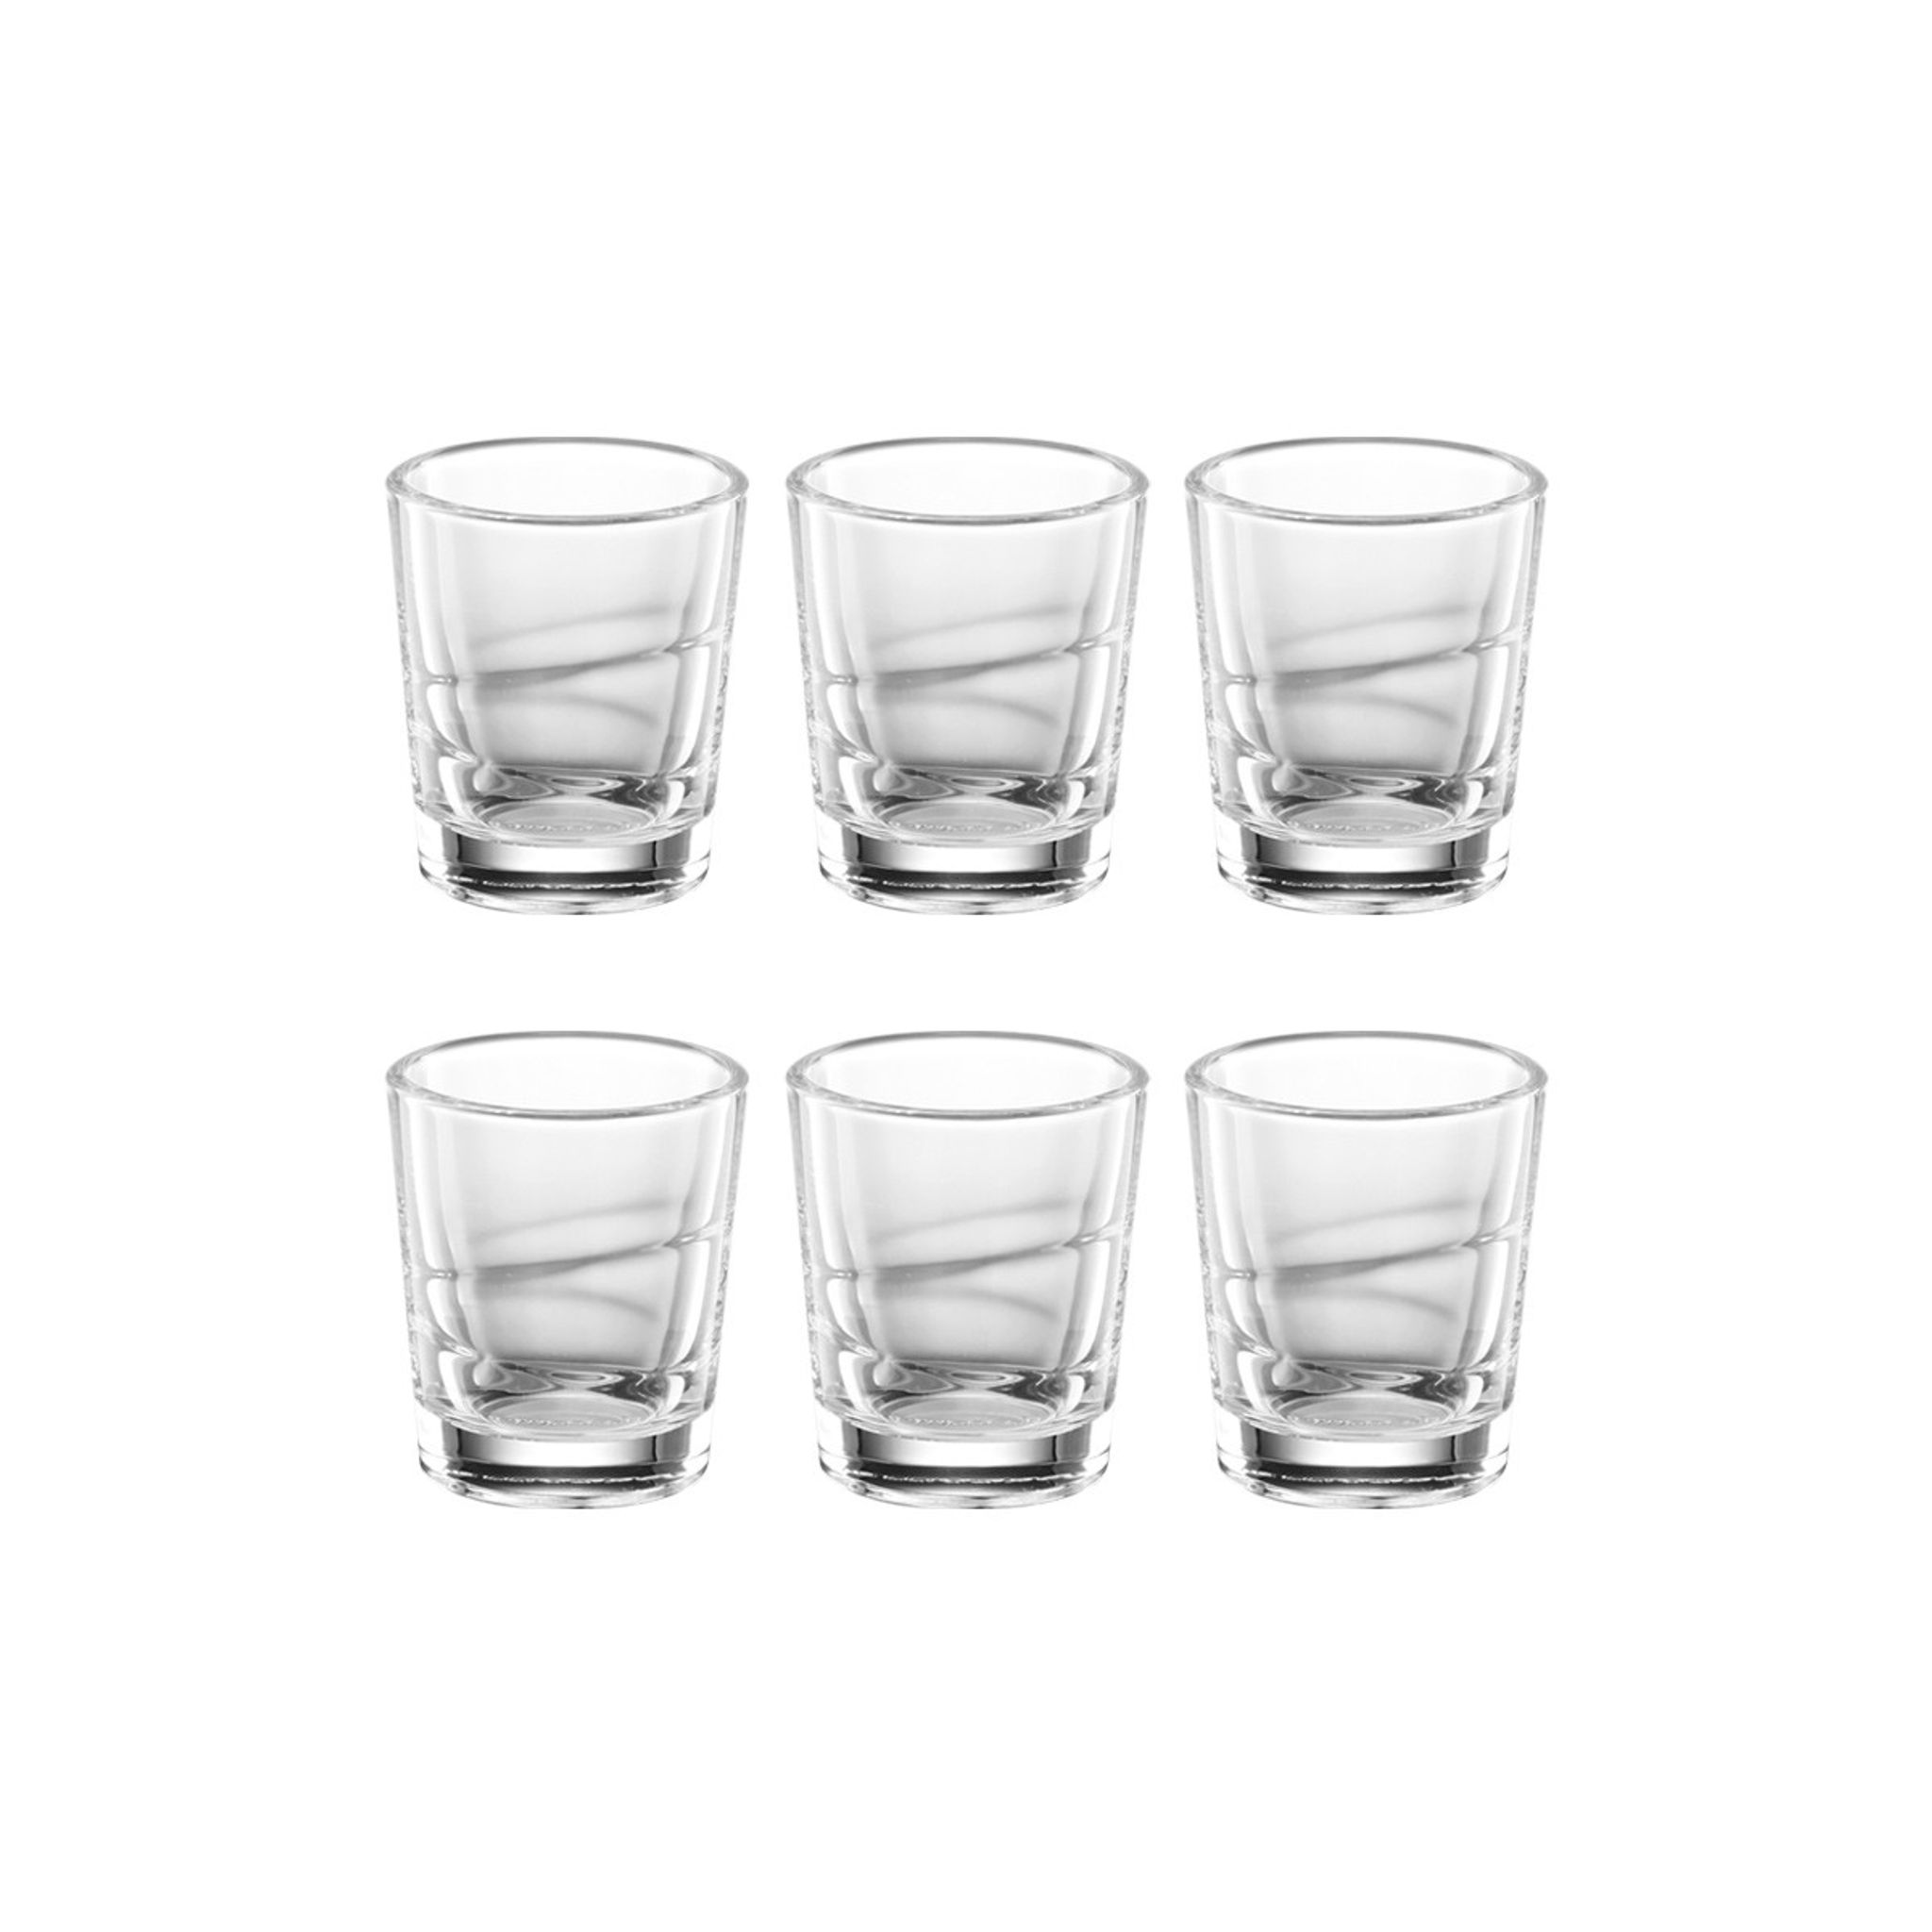 Small shot glass myDRINK 15 ml, 6 pcs